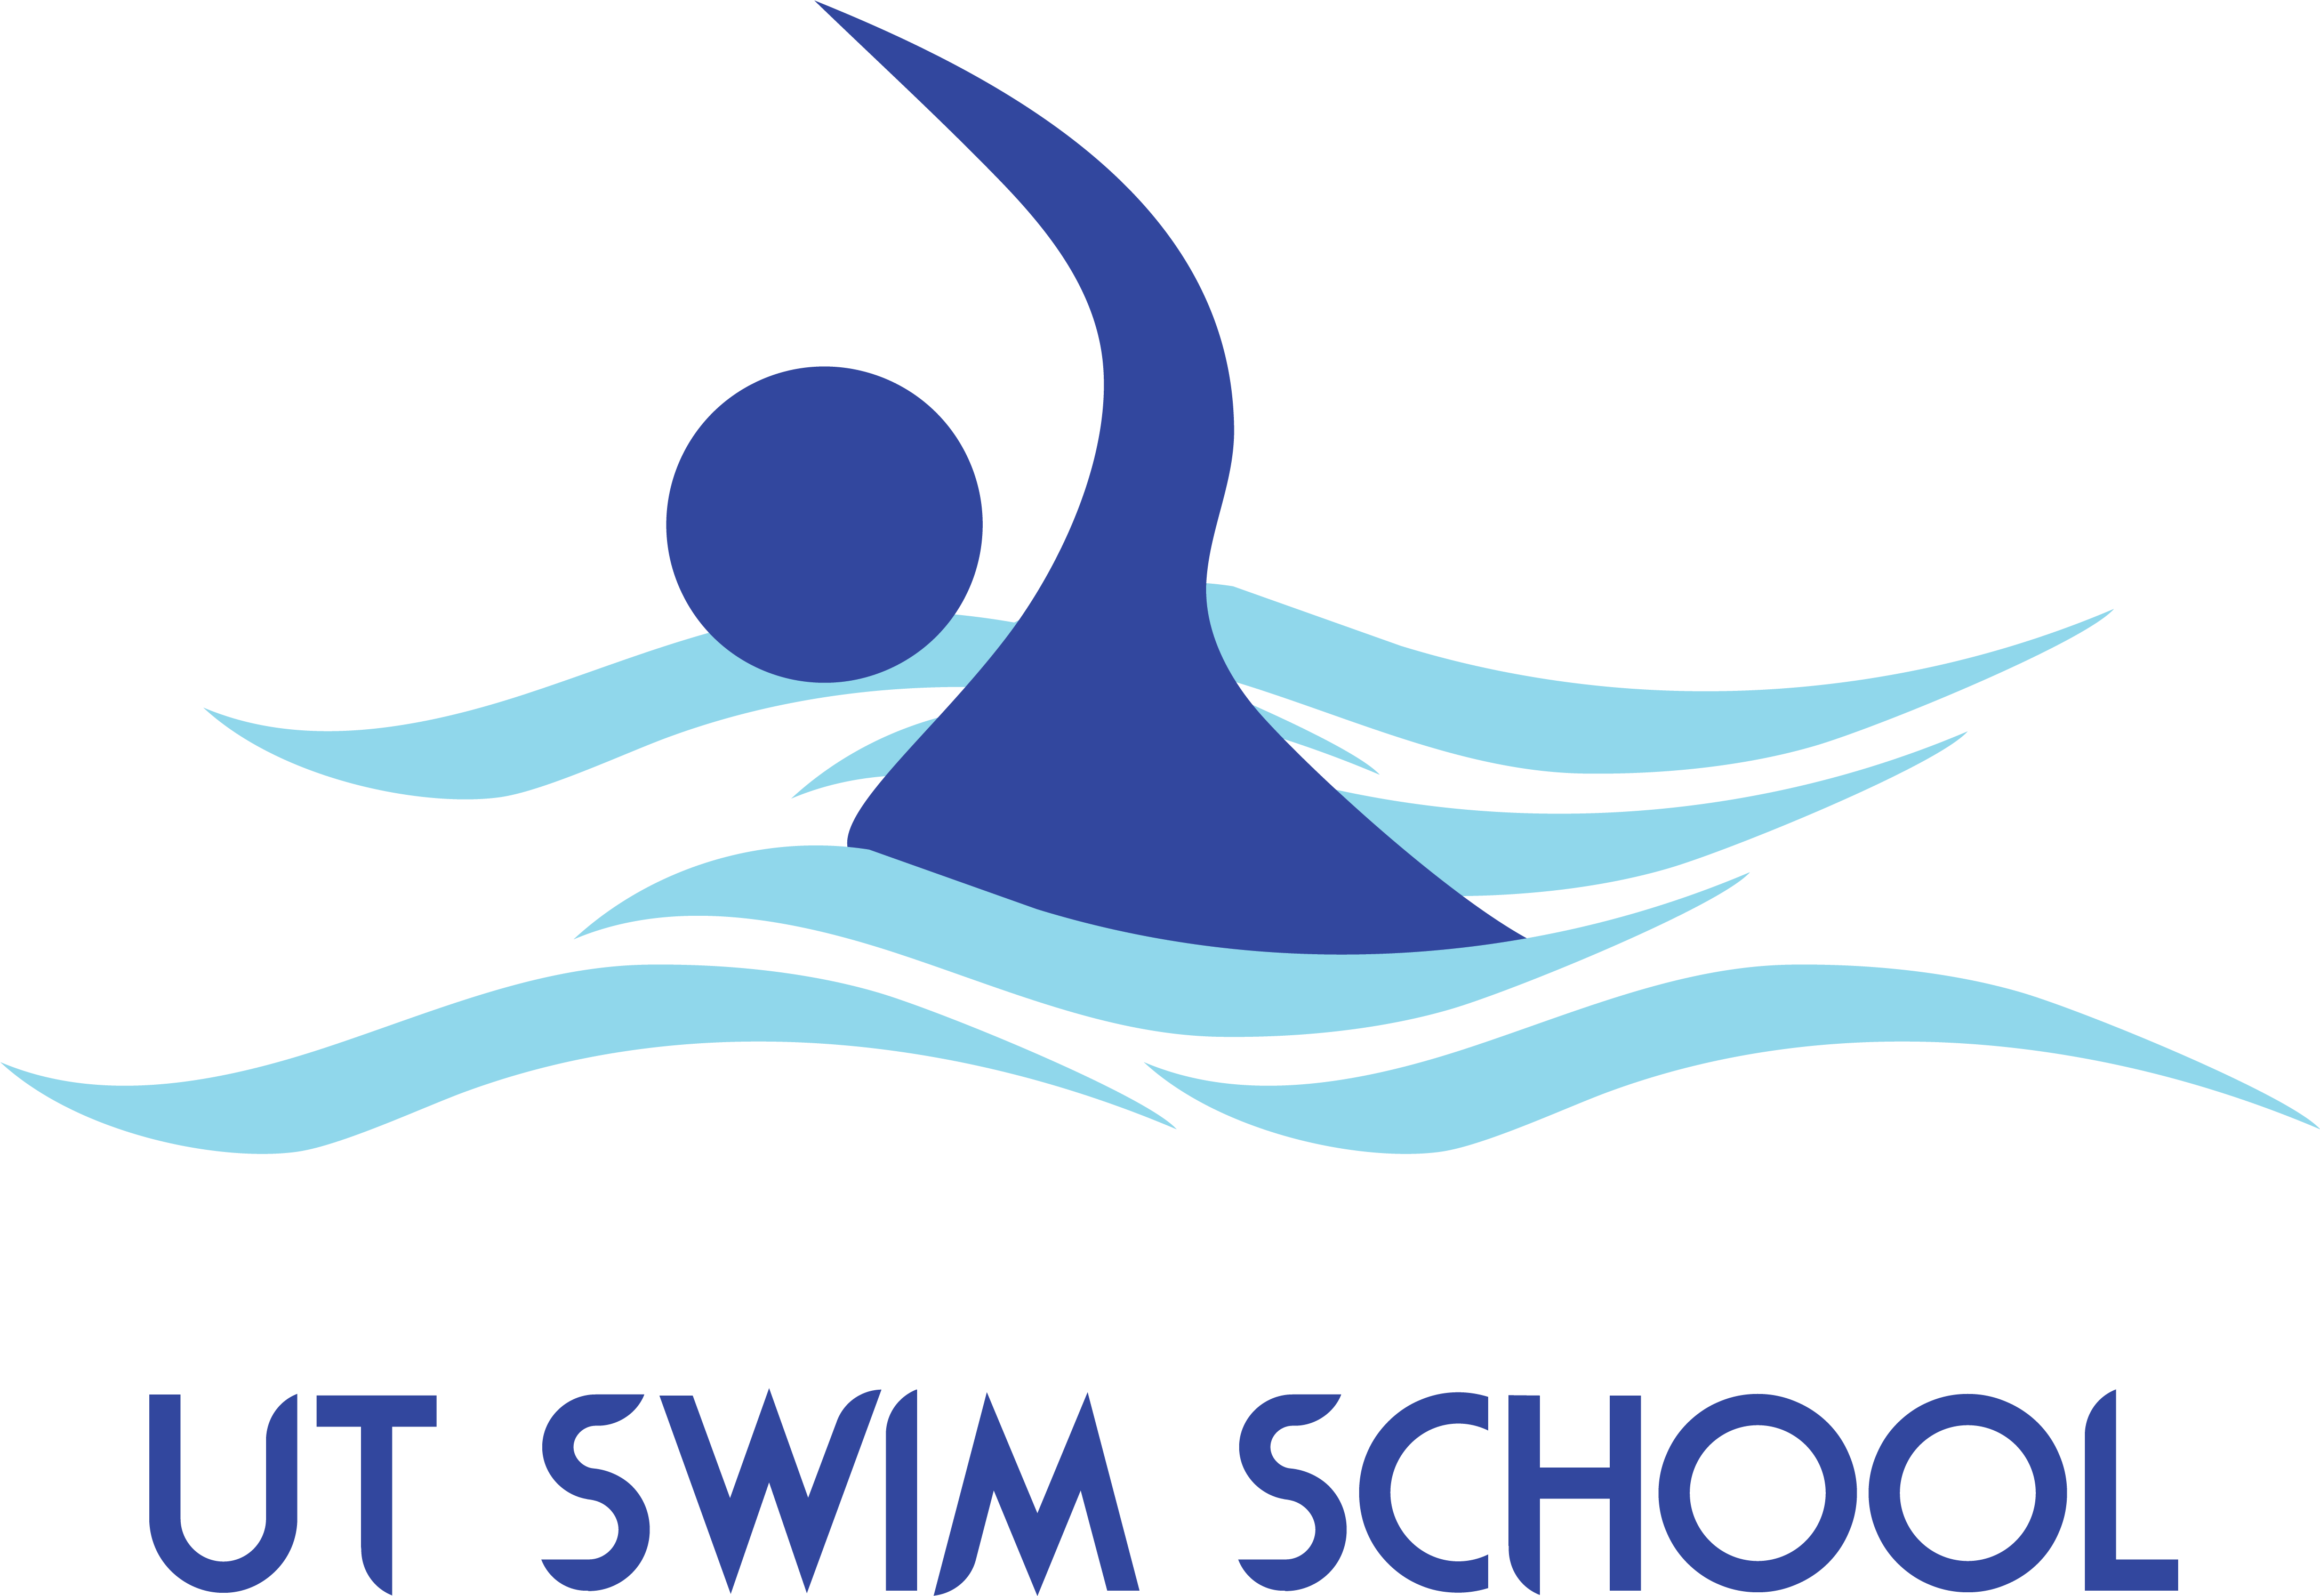 Ut Swim School Logo - Swimming Logo (4350x3043)